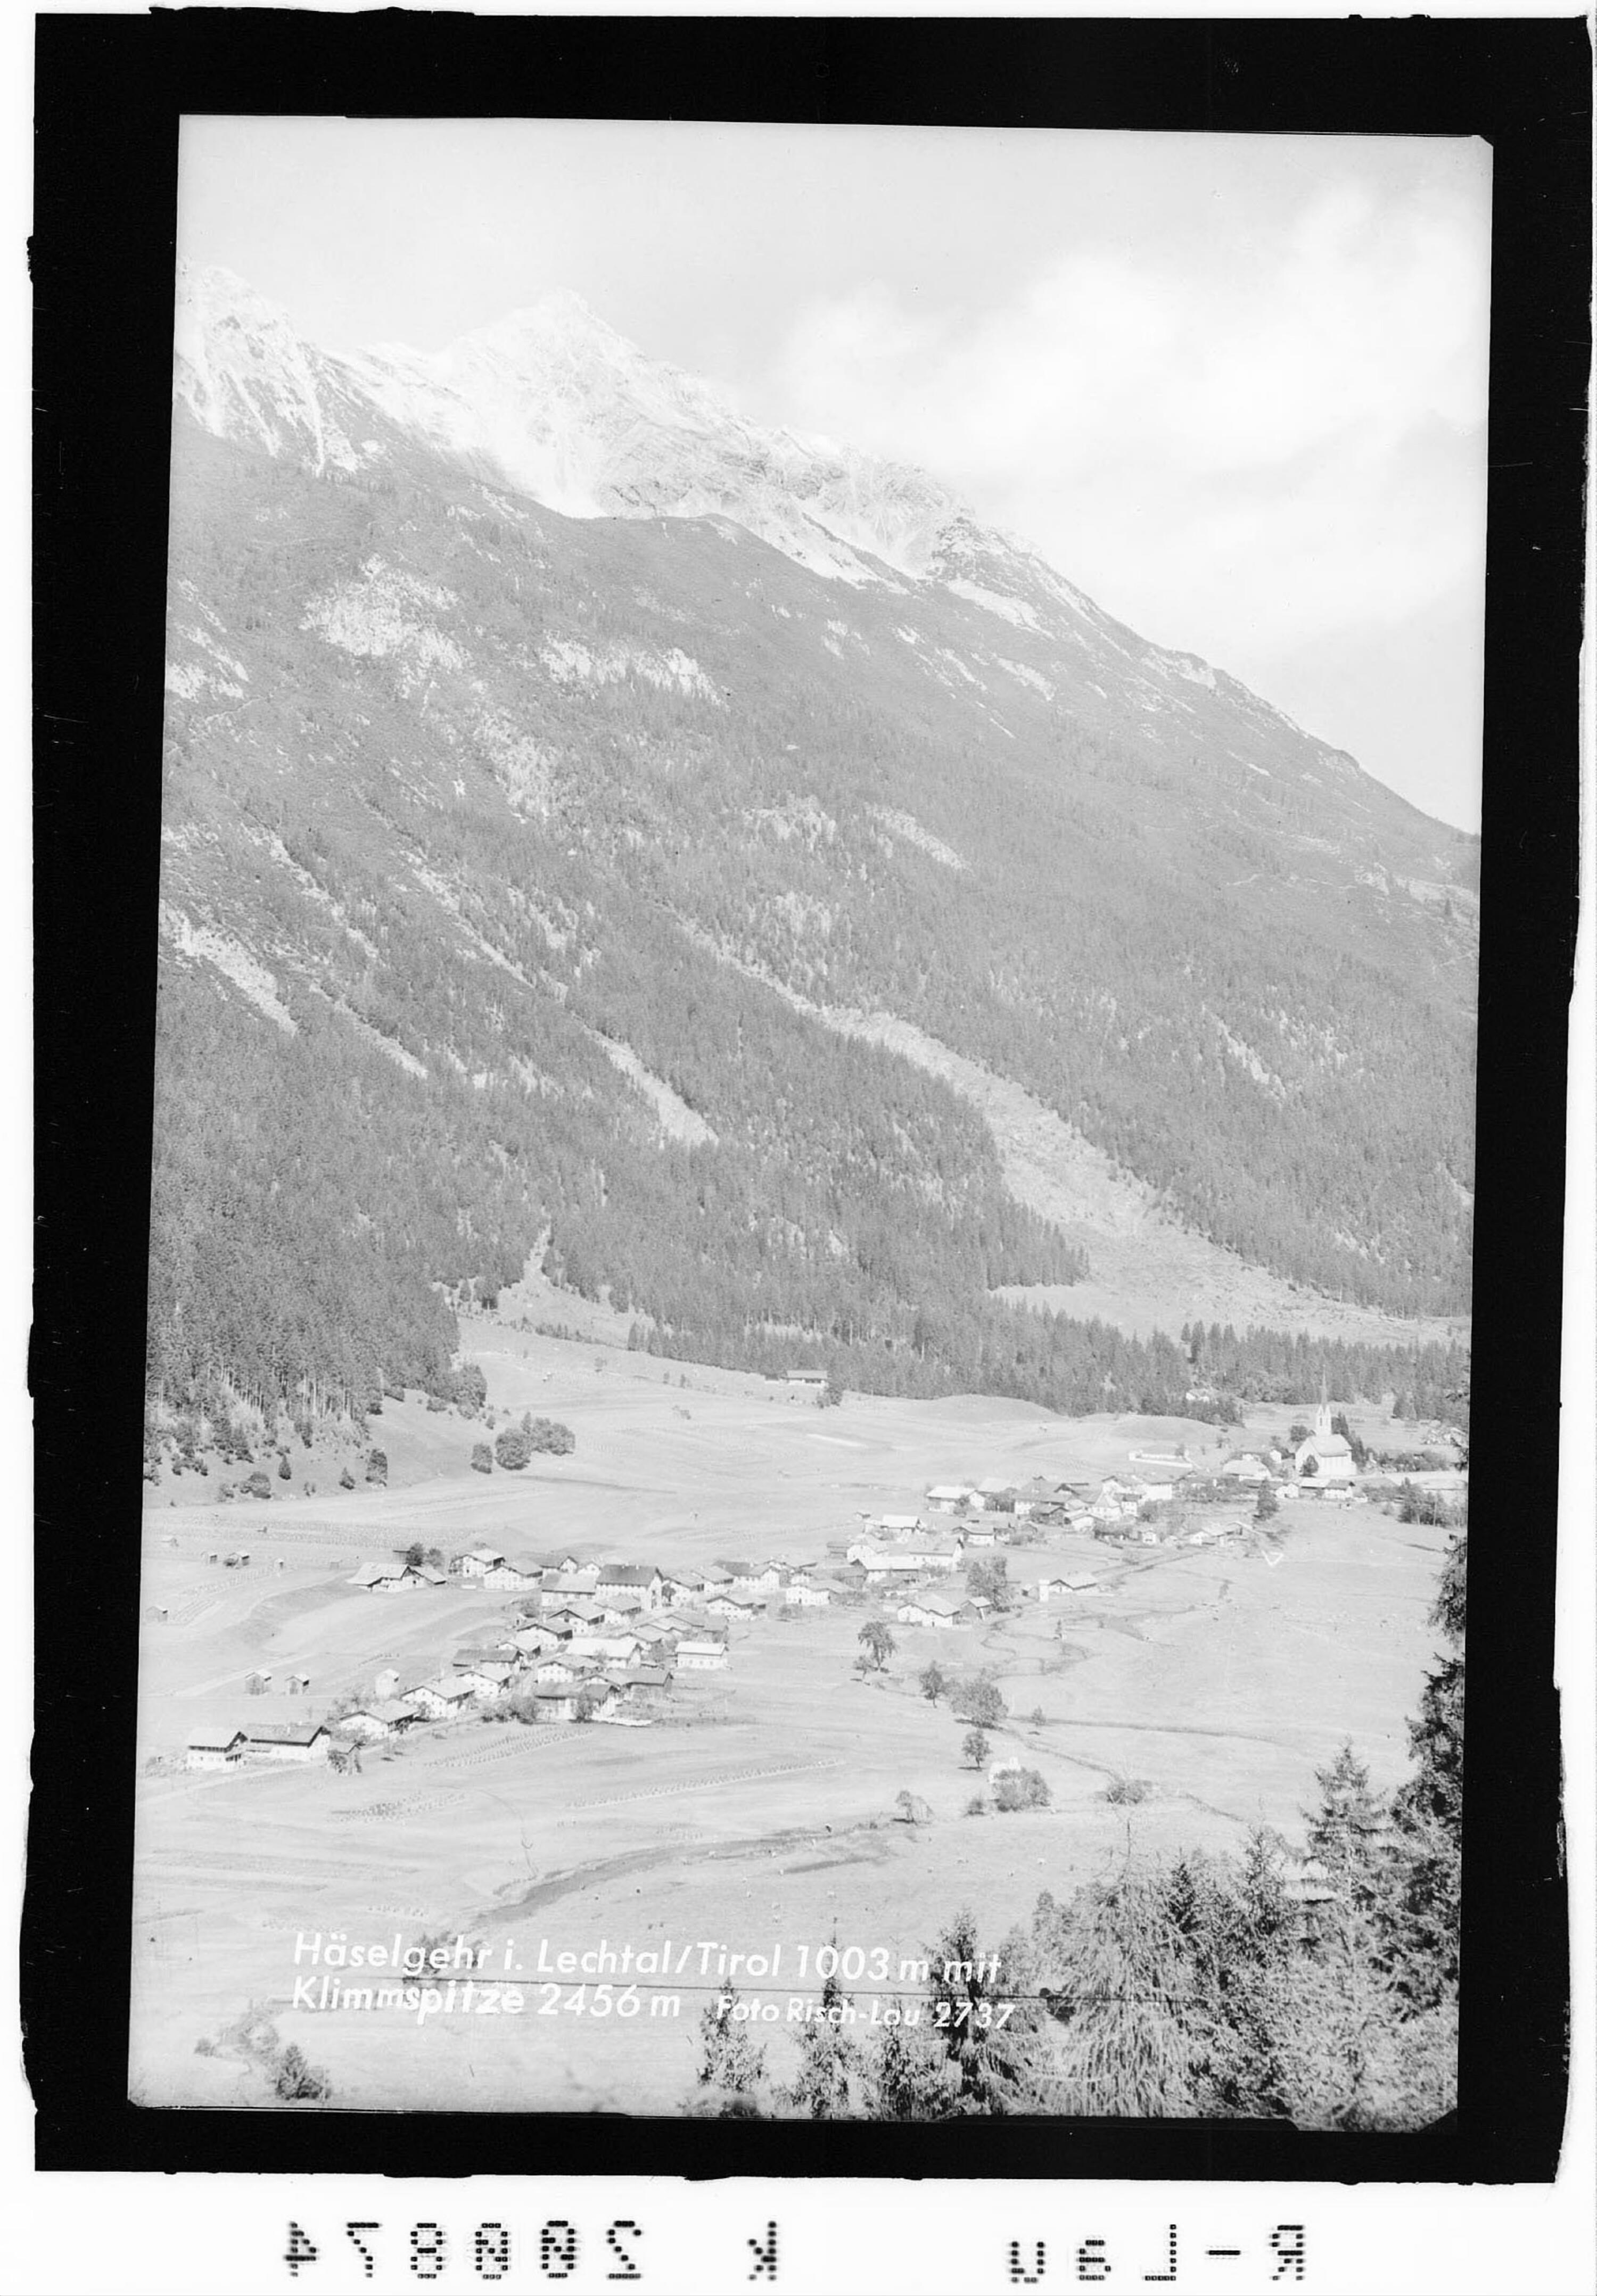 Häselgehr im Lechtal / Tirol 1003 m mit Klimmspitze 2456 m></div>


    <hr>
    <div class=